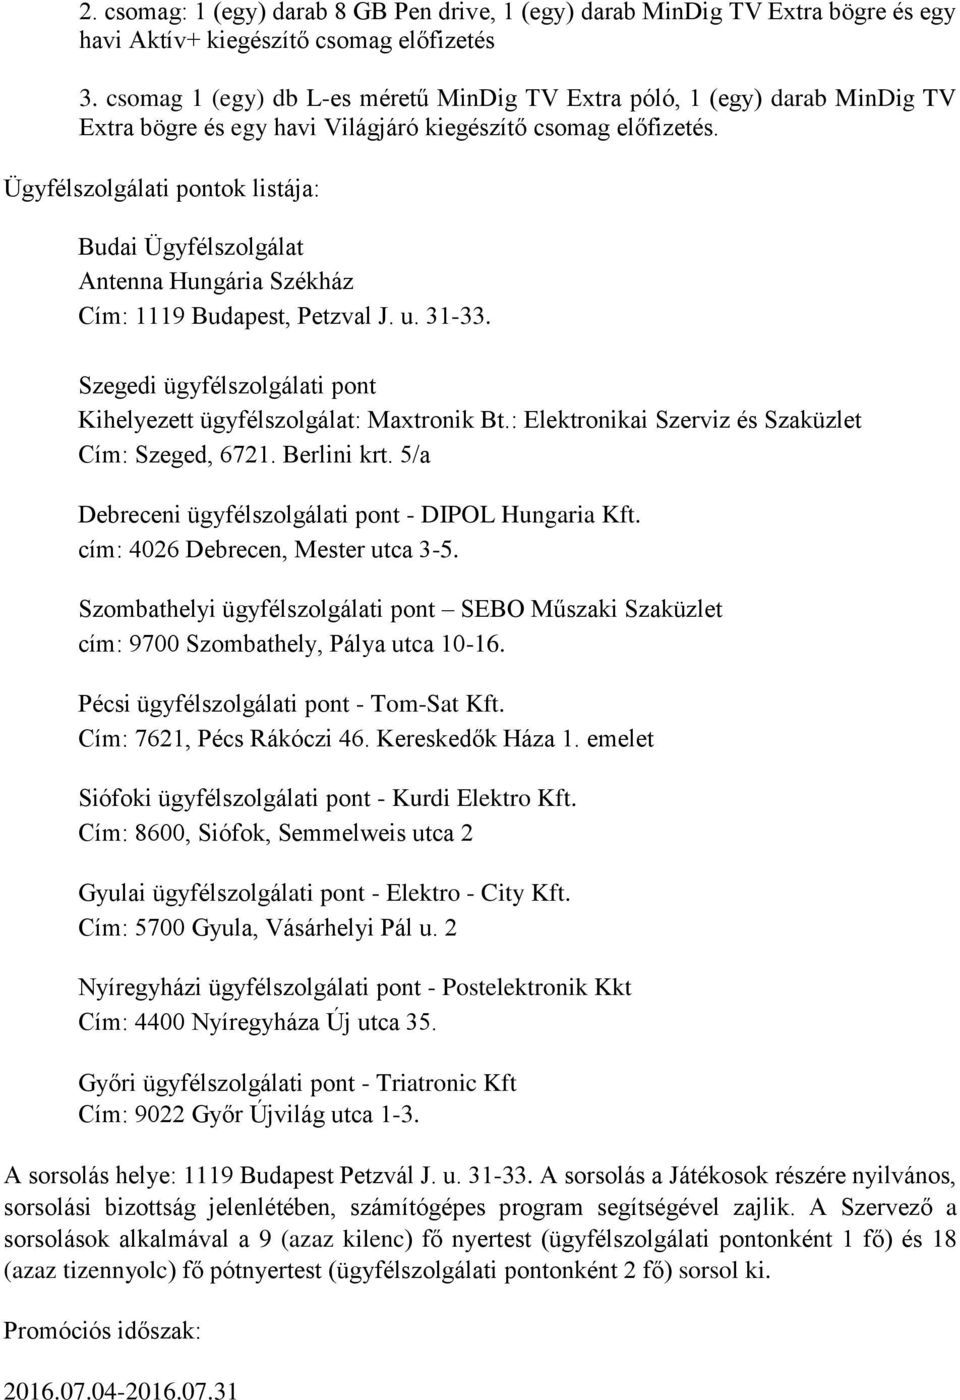 Ügyfélszolgálati pontok listája: Budai Ügyfélszolgálat Antenna Hungária Székház Cím: 1119 Budapest, Petzval J. u. 31-33. Szegedi ügyfélszolgálati pont Kihelyezett ügyfélszolgálat: Maxtronik Bt.